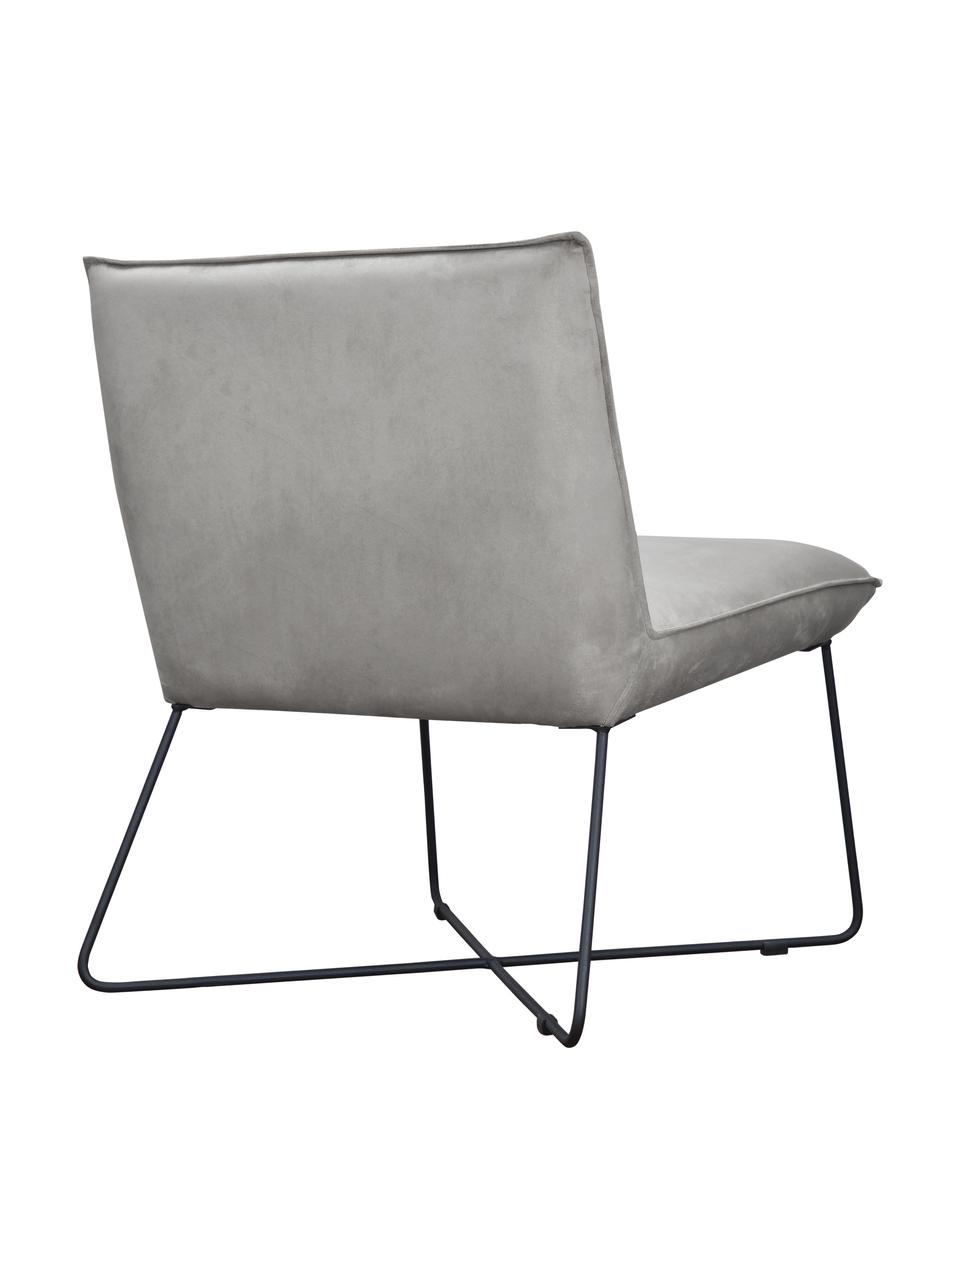 Krzesło tapicerowane z aksamitu Victor, Tapicerka: aksamit (100% poliester), Stelaż: drewno naturalne, Nogi: metal, Szary aksamit, S 75 x G 75 cm